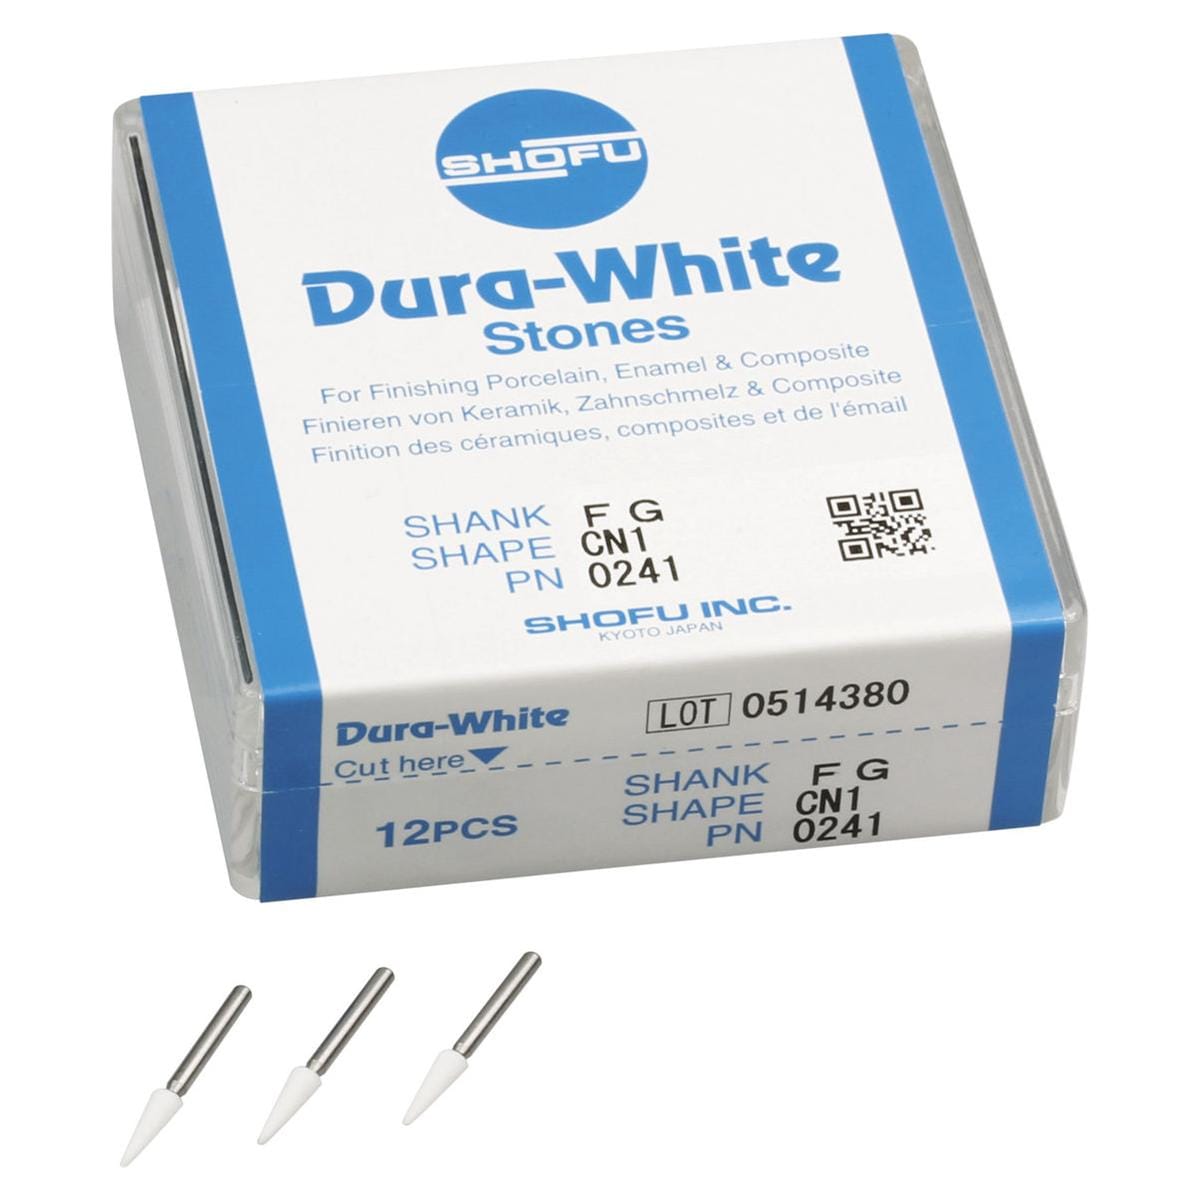 Dura-White® Schaft FG - Figur CN1, ISO 024, Packung 12 Stück